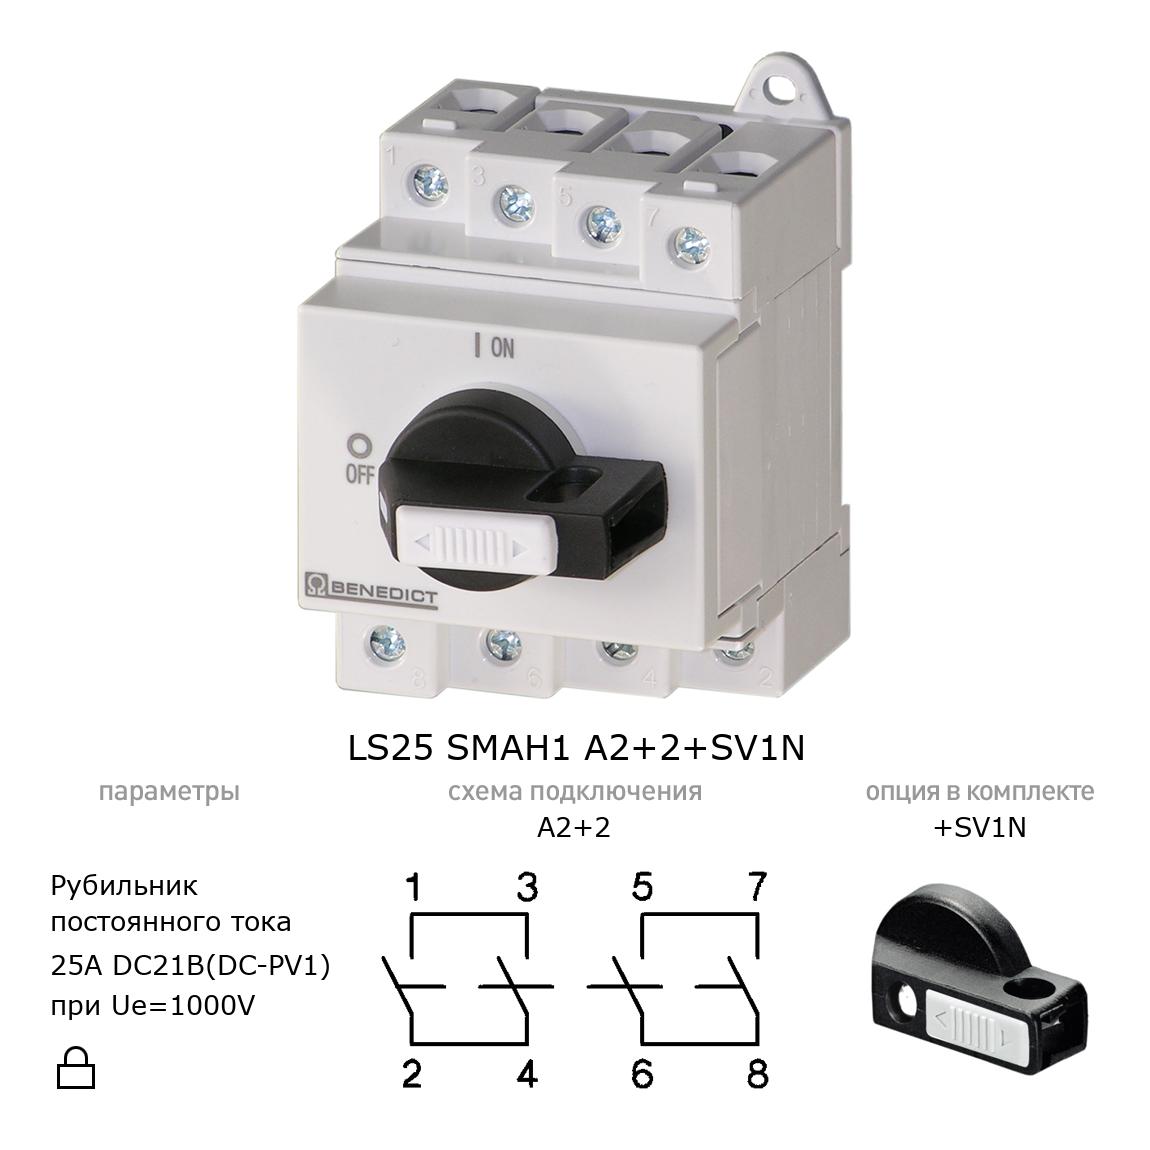 Выключатель нагрузки / рубильник для постоянного тока (DC) LS25 SMAH1 A2+2+SV1N BENEDICT